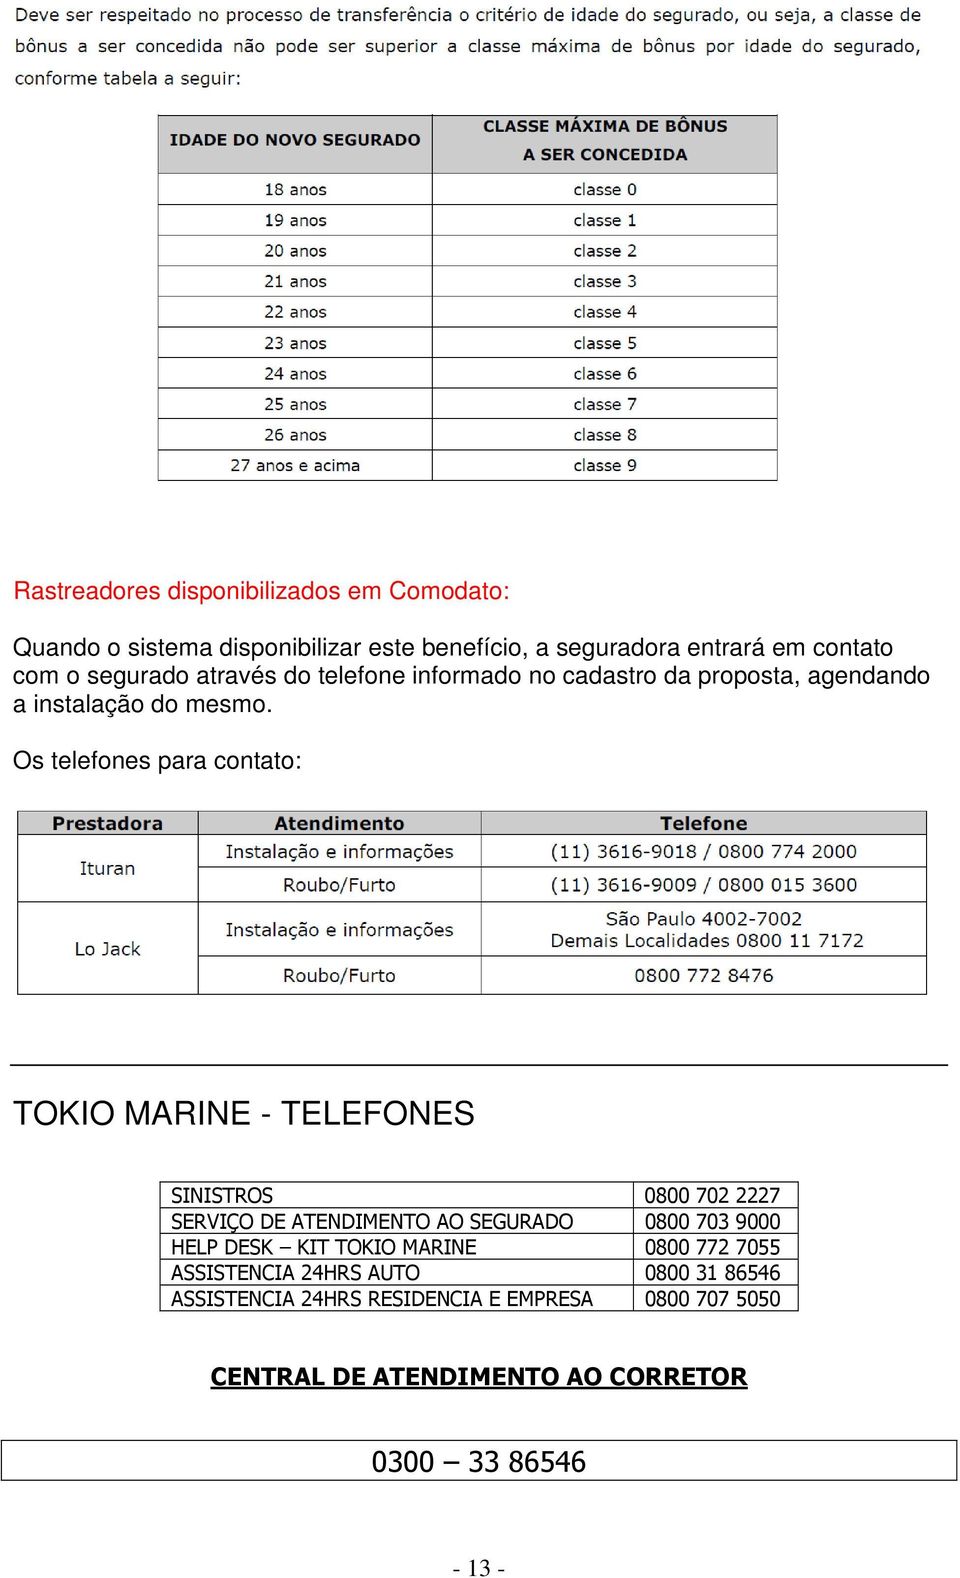 Os telefones para contato: TOKIO MARINE - TELEFONES SINISTROS 0800 702 2227 SERVIÇO DE ATENDIMENTO AO SEGURADO 0800 703 9000 HELP